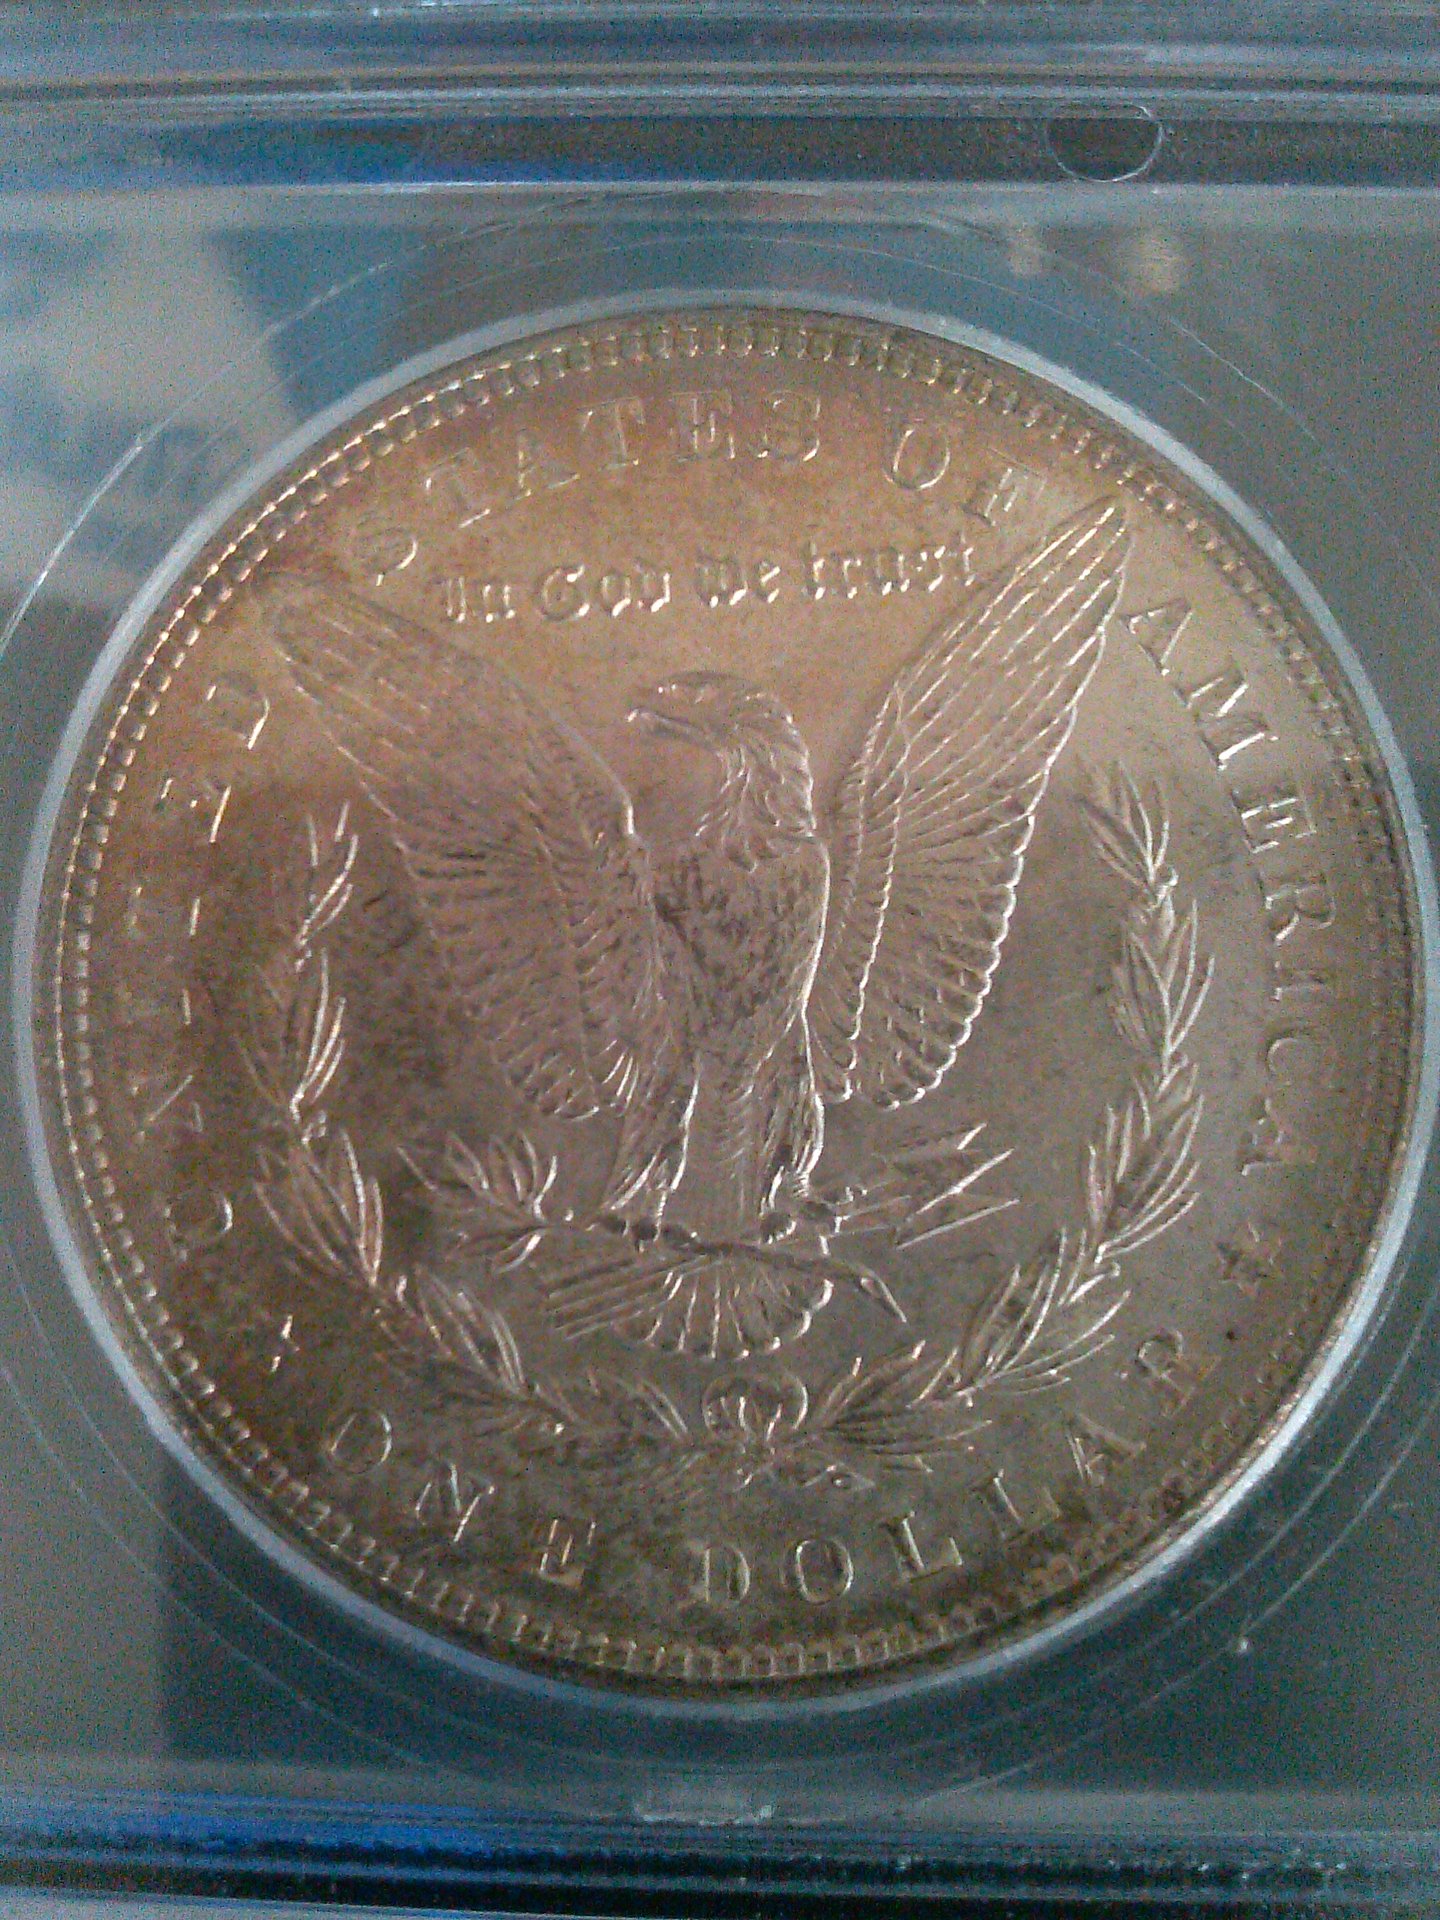 1888 morgan dollar 002.jpg